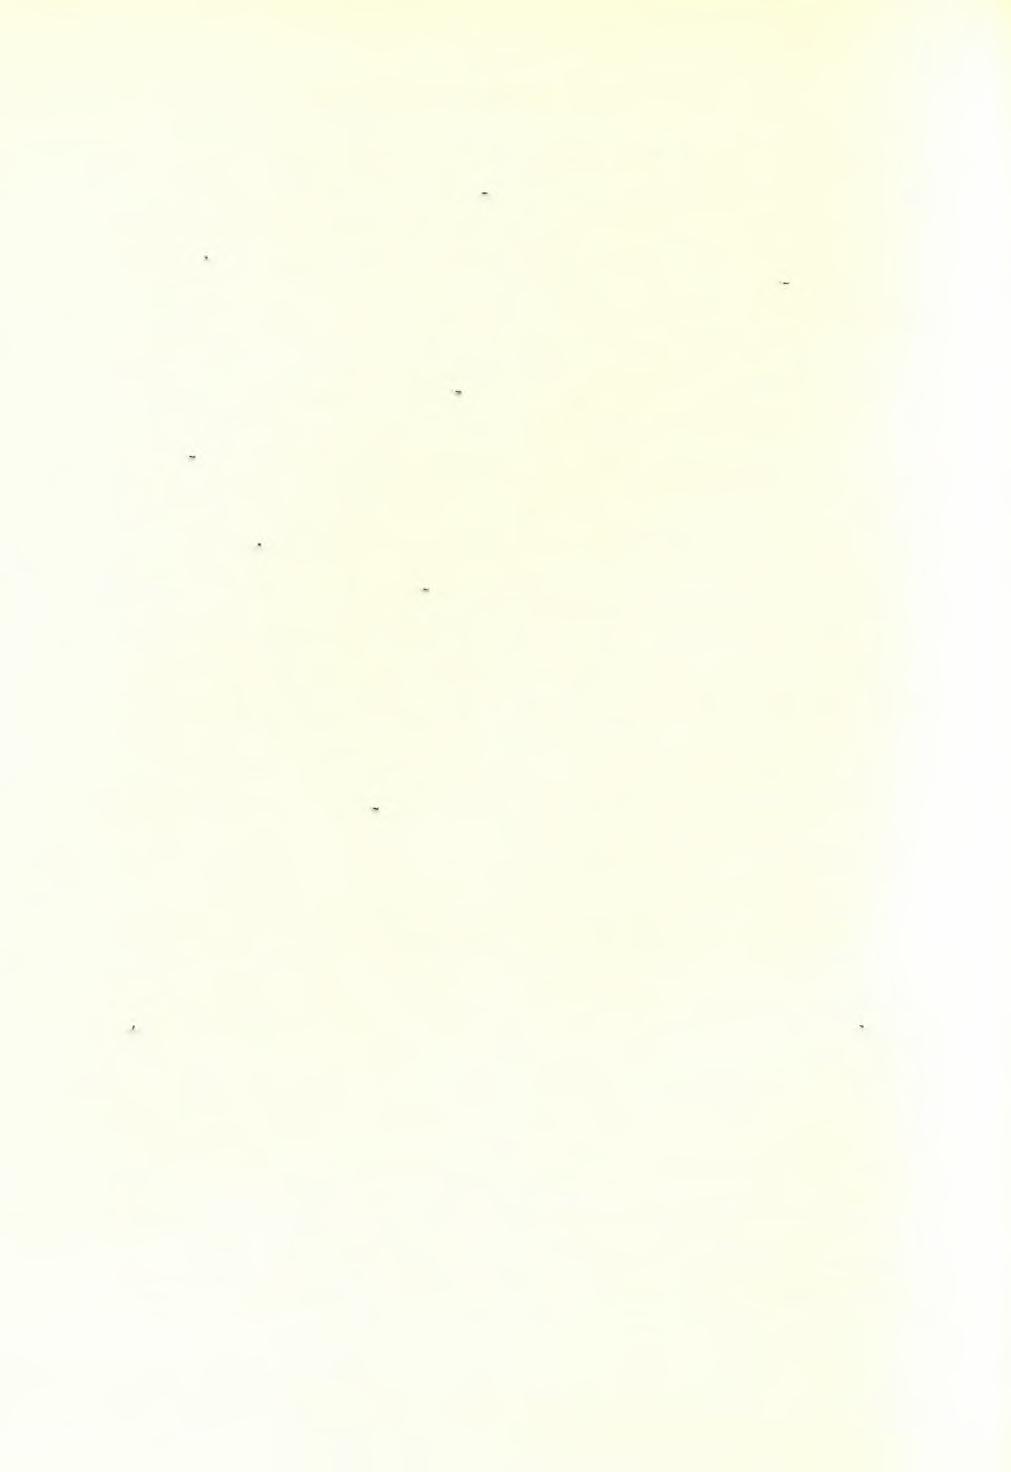 594 ΑΡΧΑΙΟΛΟΓΙΚΟΝ ΔΕΛΤΙΟΝ 20(1965): ΧΡΟΝΙΚΑ μένα οικόπεδα Σωτρίλλη καί Άσπράκη καί έγέ- νετο έναρξις έρεύνης είς τό ΝΑ.